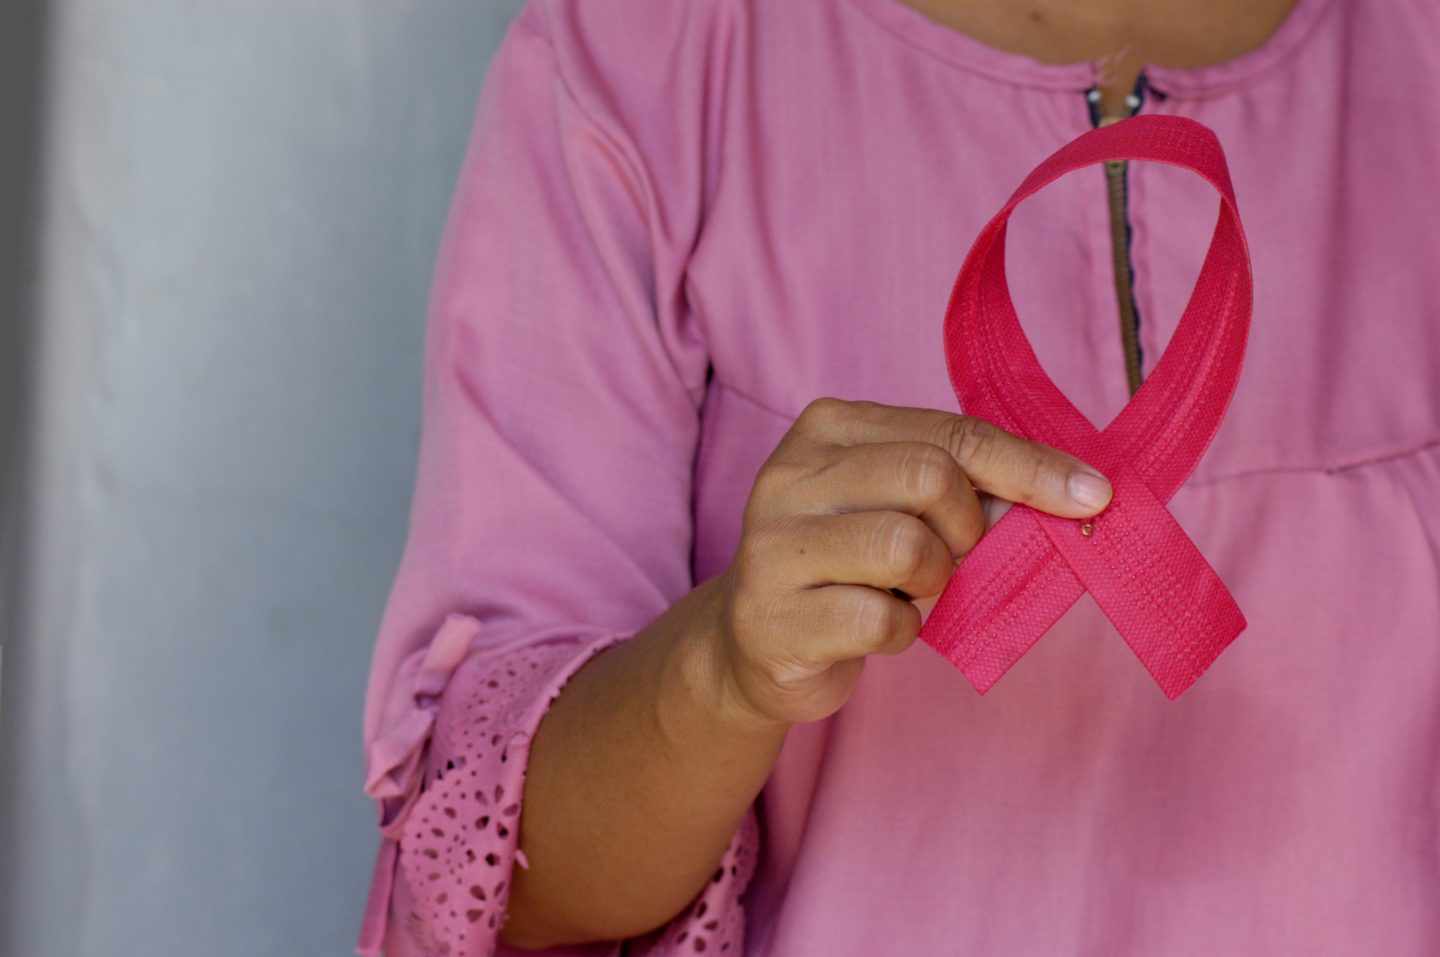 Jede achte Frau erkrankt im Lauf ihres Lebens an Brustkrebs. Deshalb ist die jährliche Vorsorge Untersuchung und auch das monatliche selbst Abtasten lebenswichtig. Foto: angiola-harry-unsplash.com